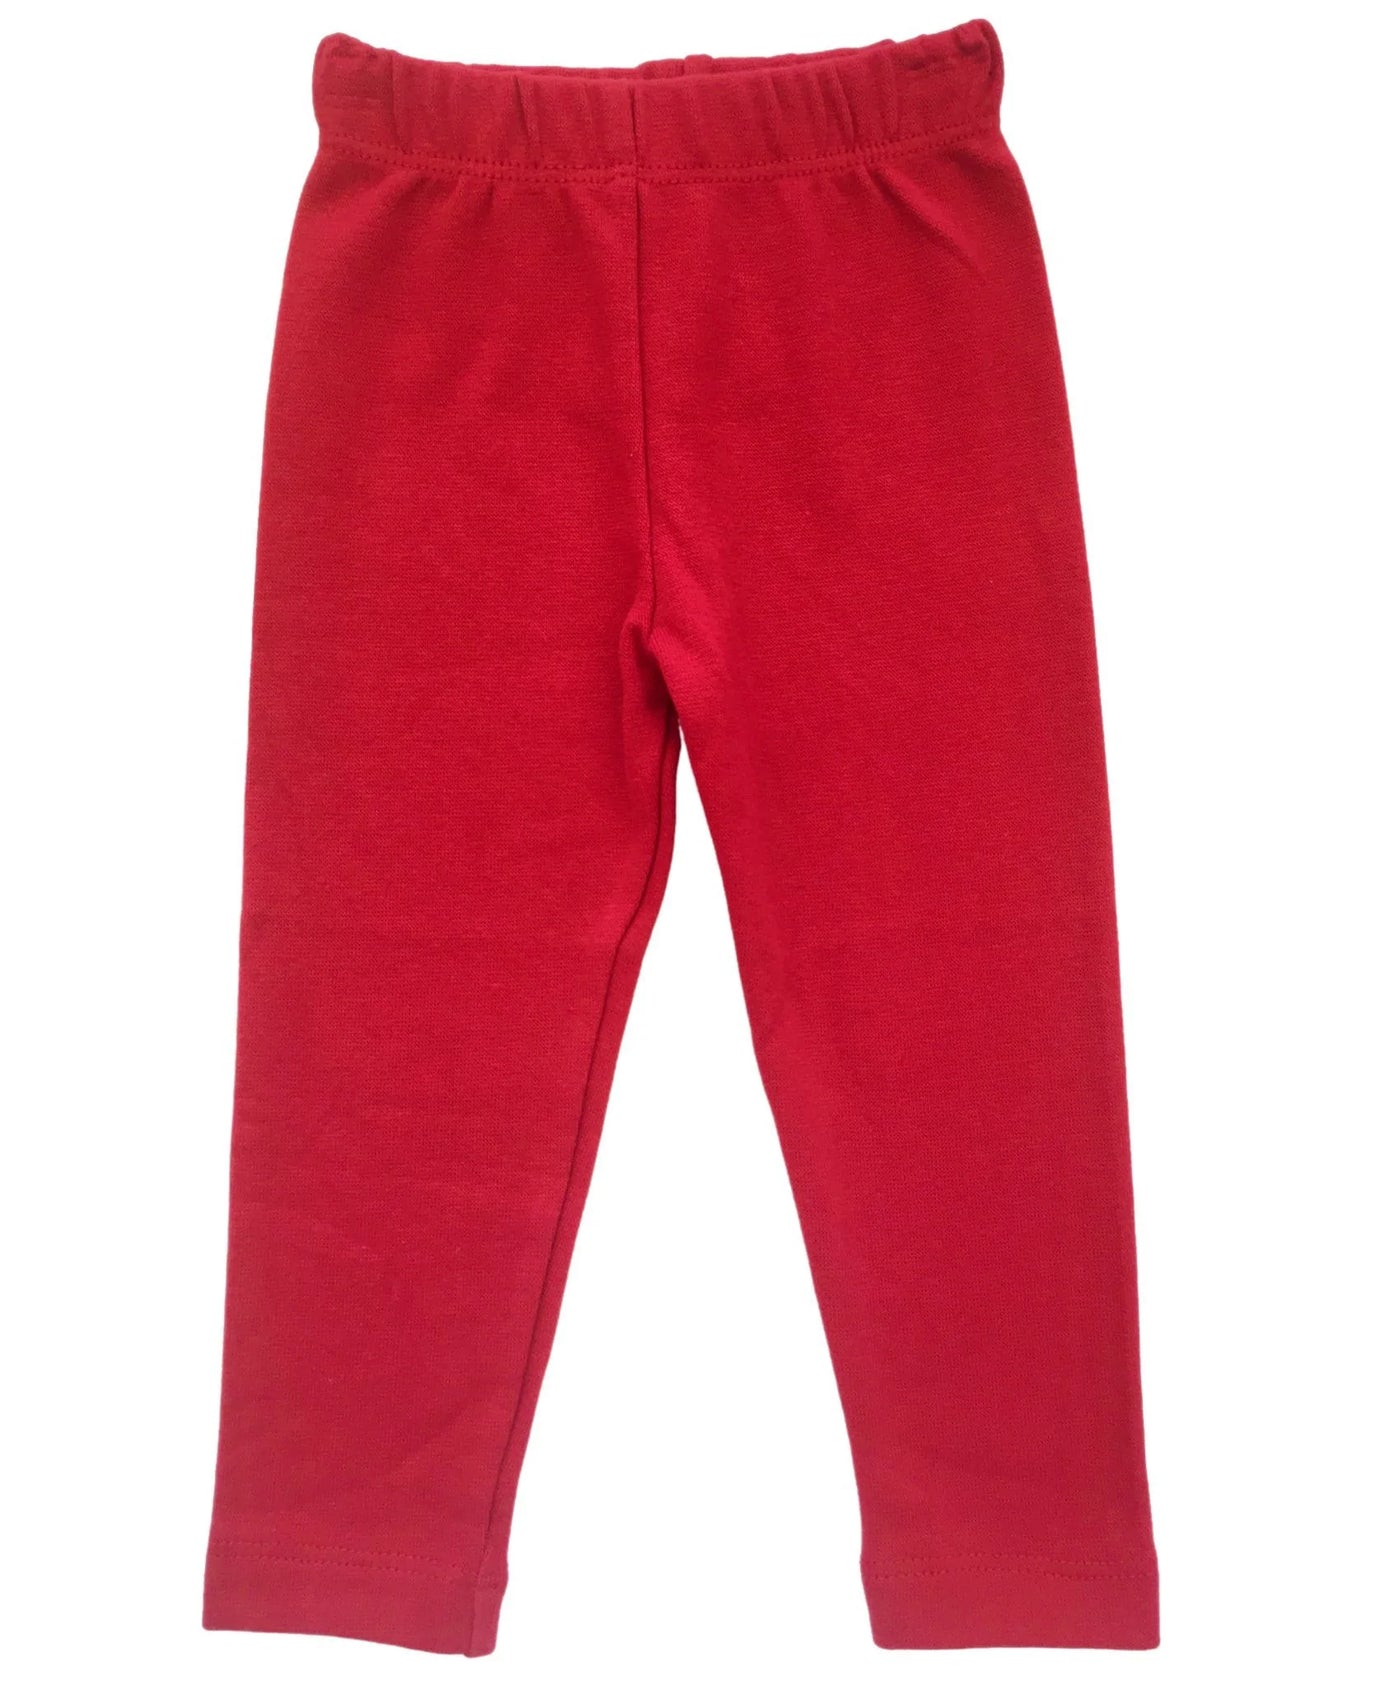 Straight leggings- red